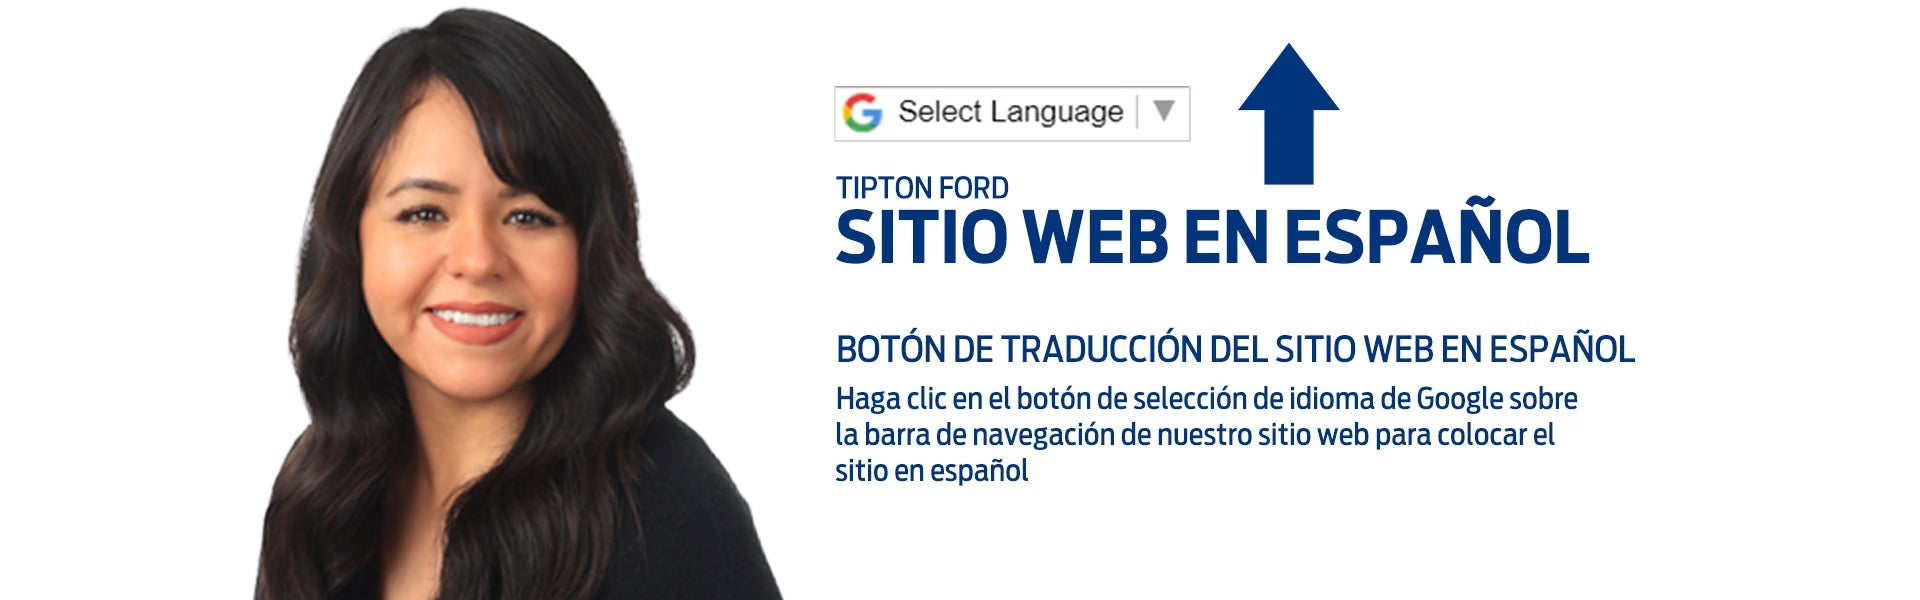 Sitio web en espanol